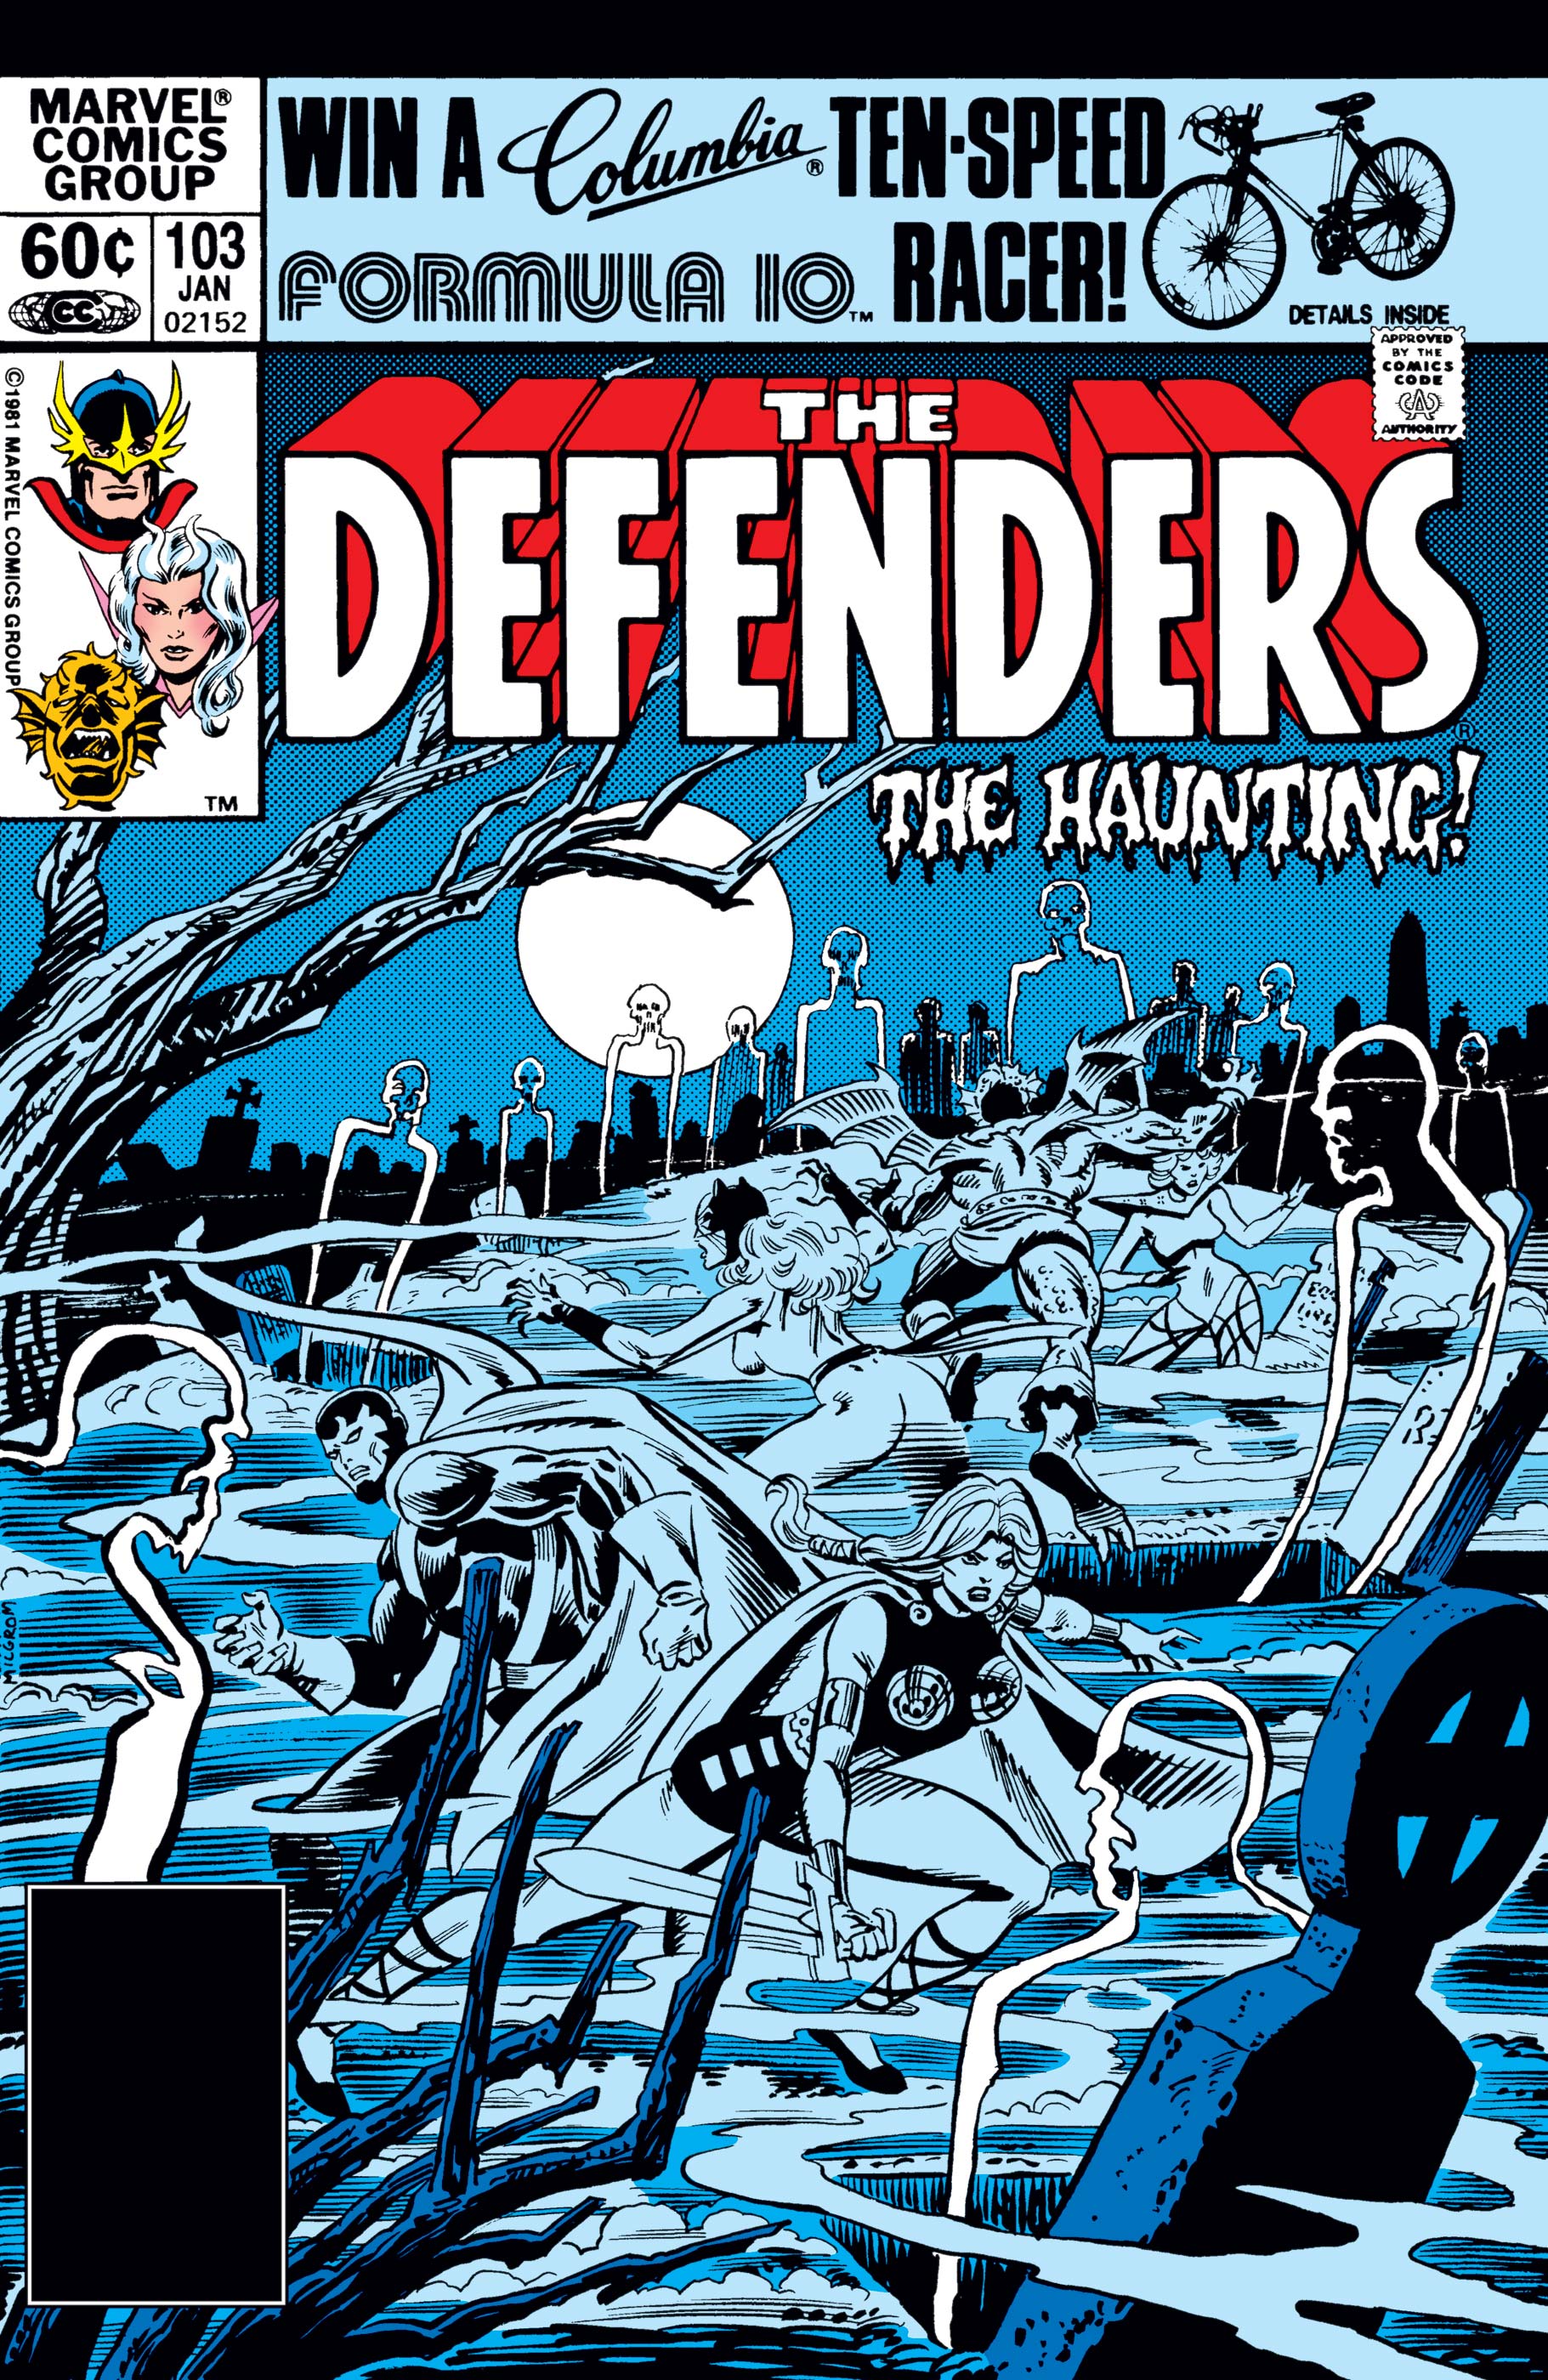 Defenders (1972) #103